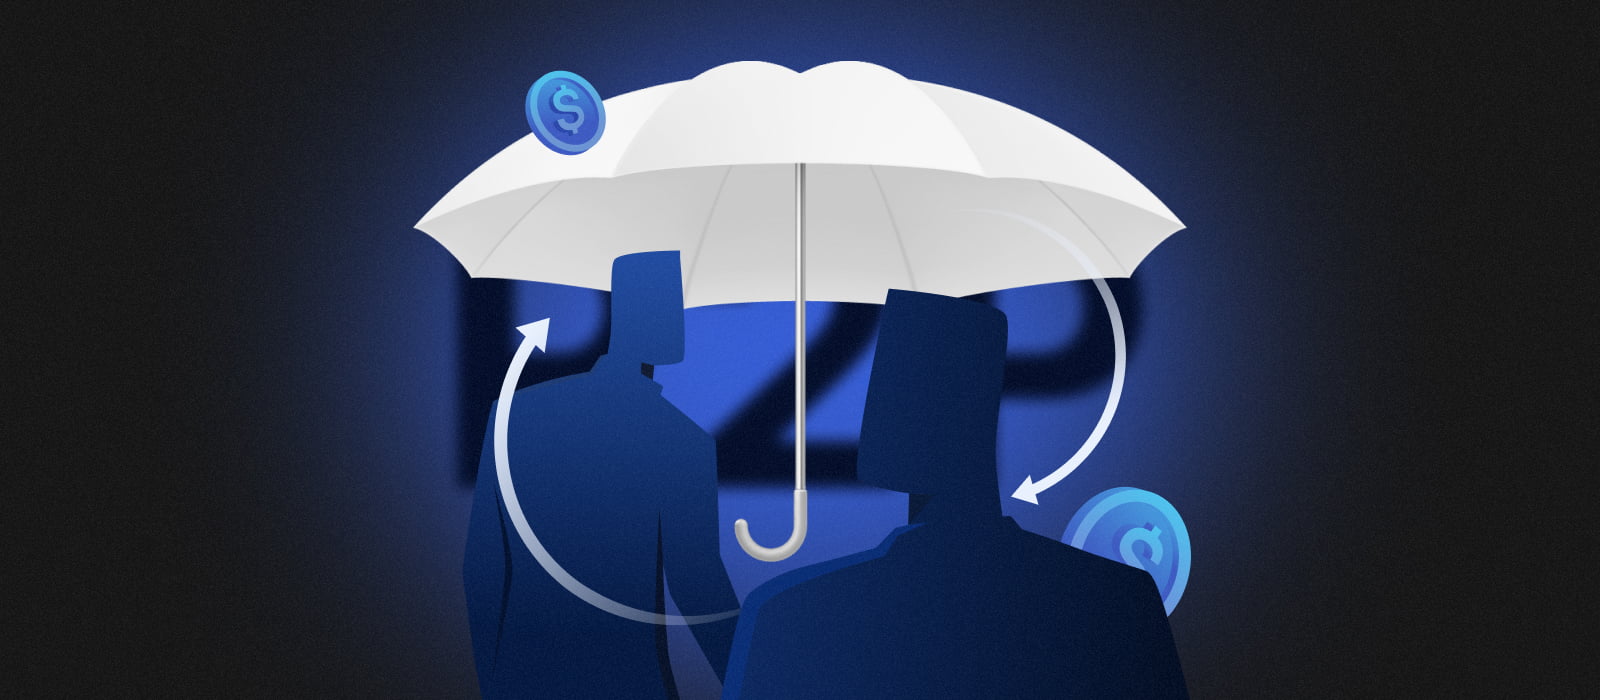 Blog — Umbrella Collective